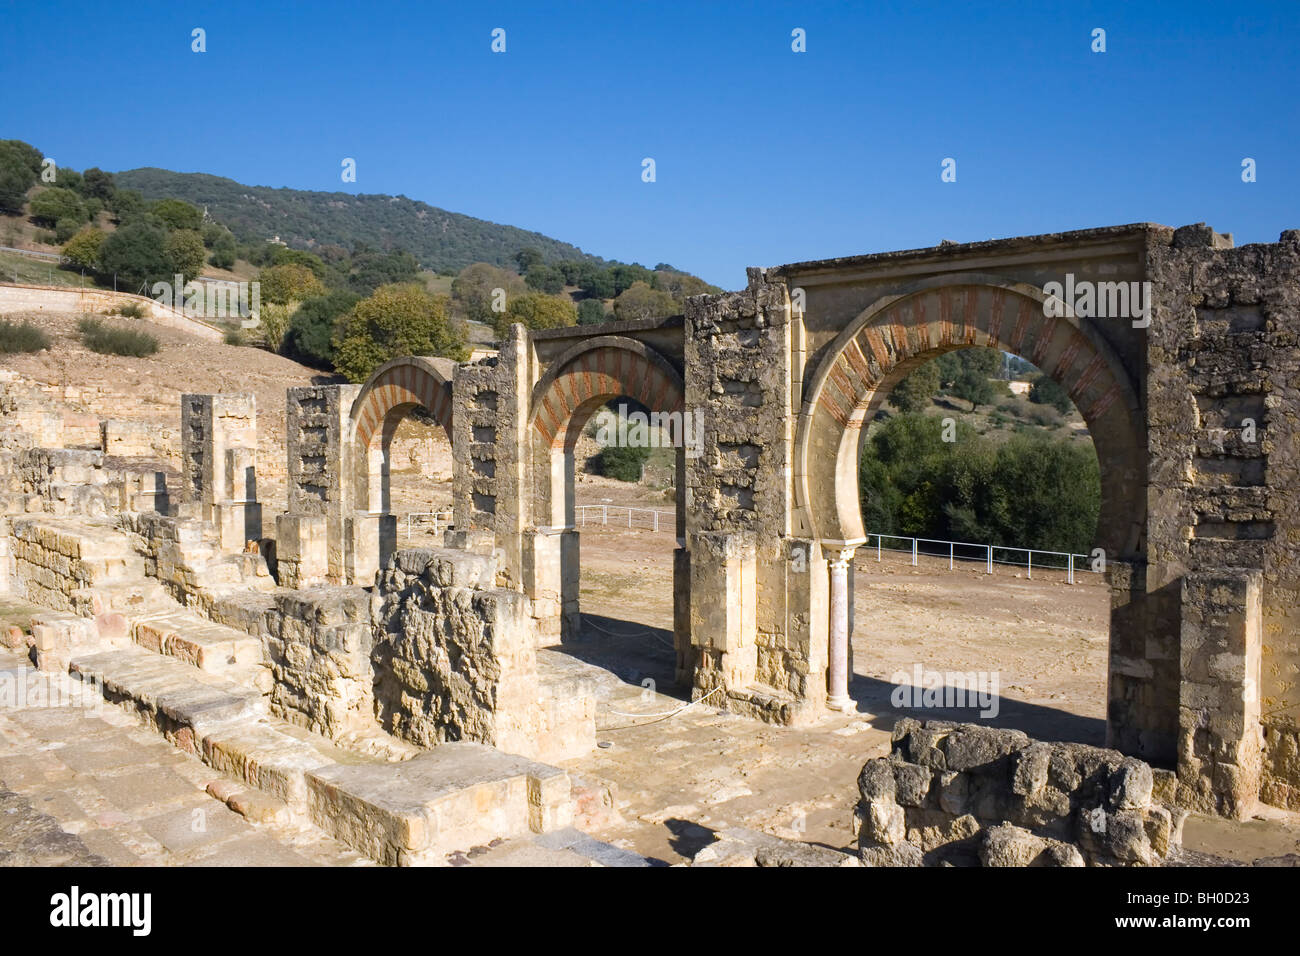 Cordoba, Spain. The Great Portico at Medina Azahara or Madinat al Zahra palace city. Stock Photo